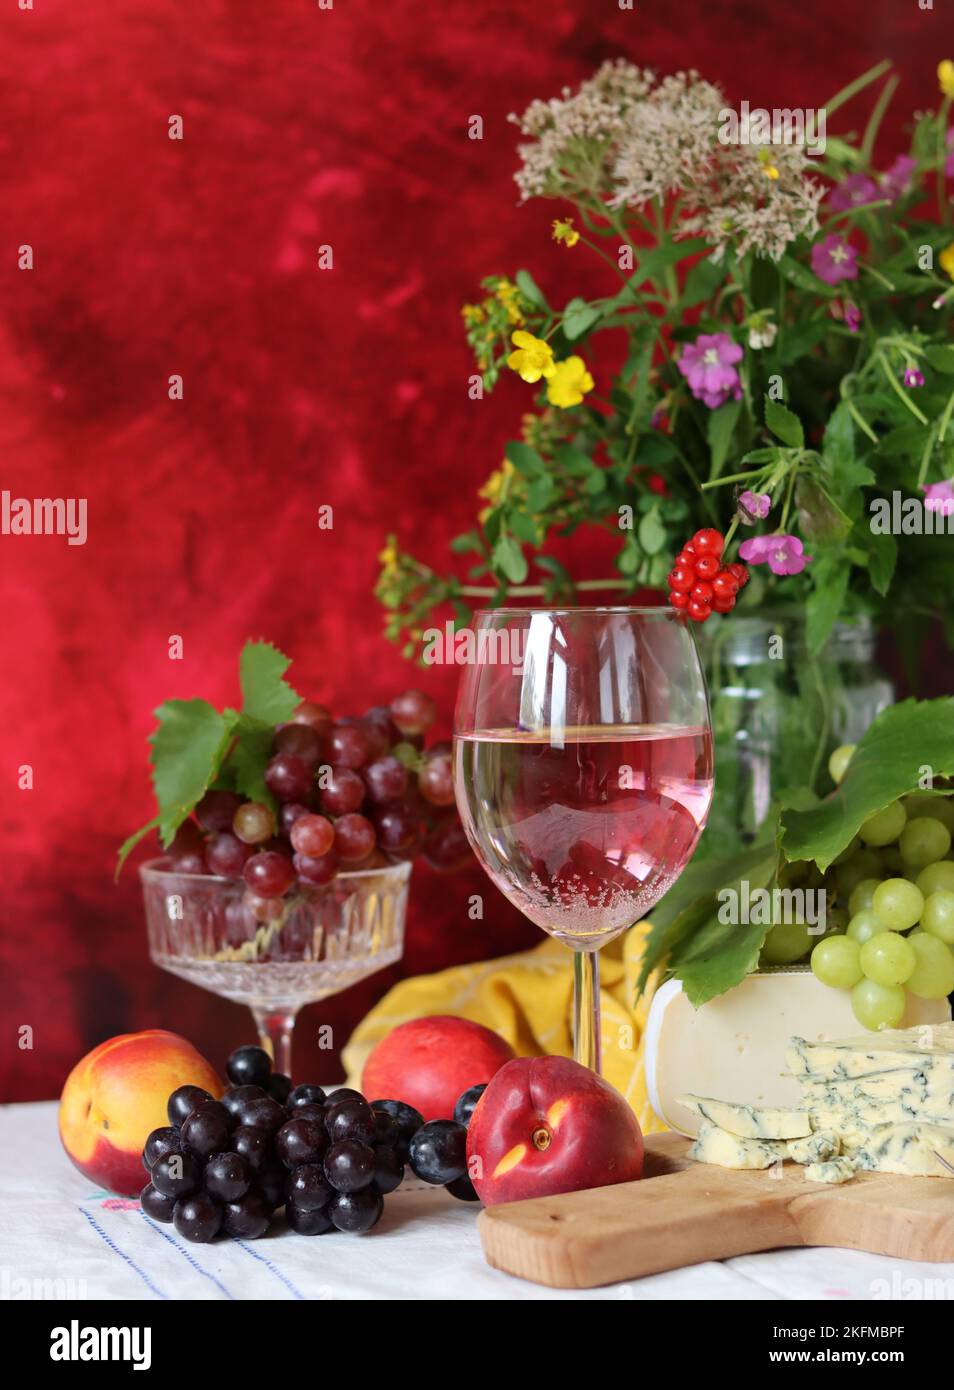 Wein, Käse, Obst und Blumen auf einem Tisch. Lebendige Farben frischer Beeren und Trauben. Farbenfrohes Stillleben mit einem Glas rosa Wein und Obst. Stockfoto